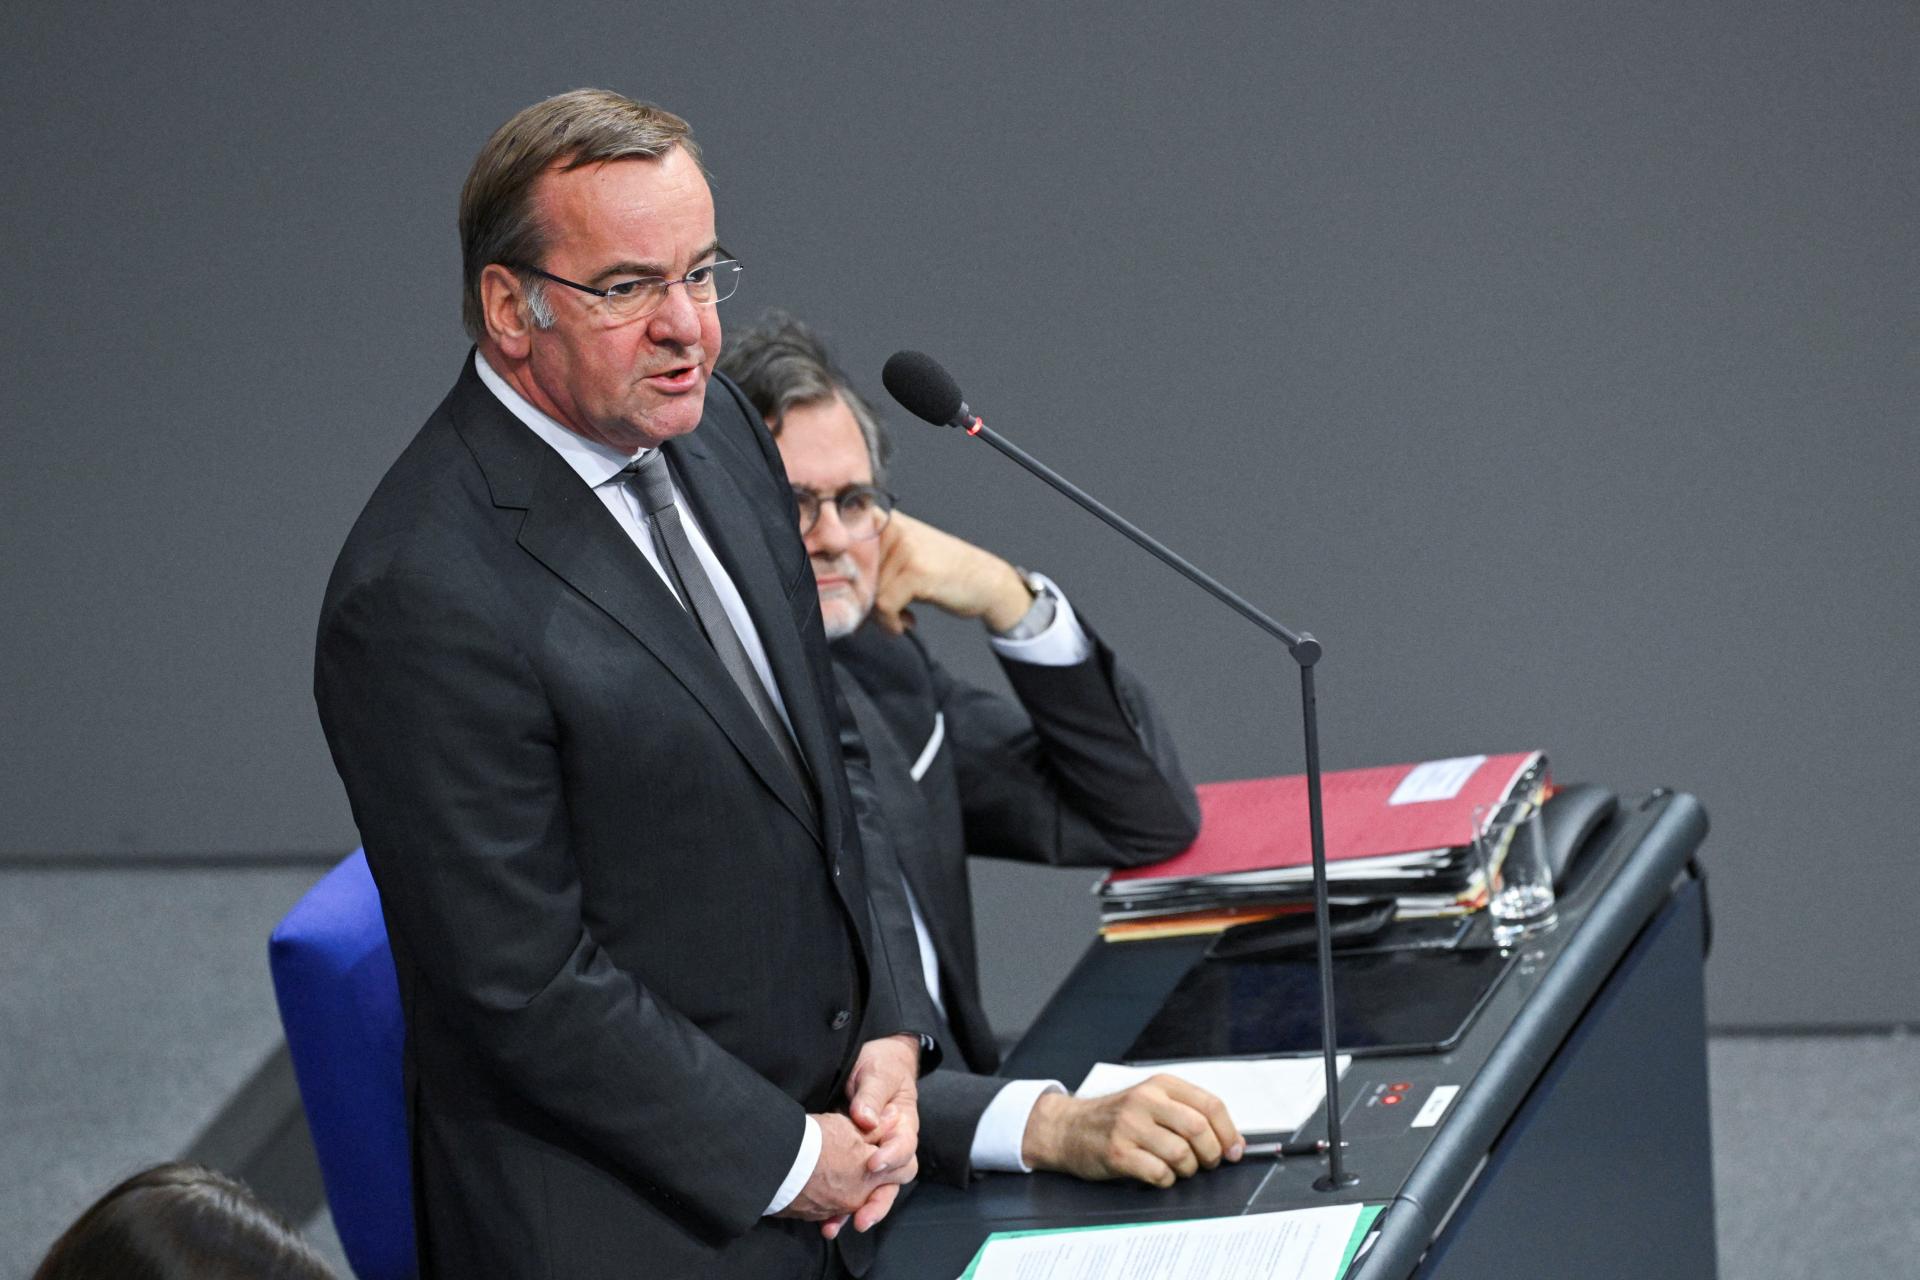 Nemecký minister Pistorius zdôraznil bojaschopnosť nemeckej armády a upozornil na hrozby